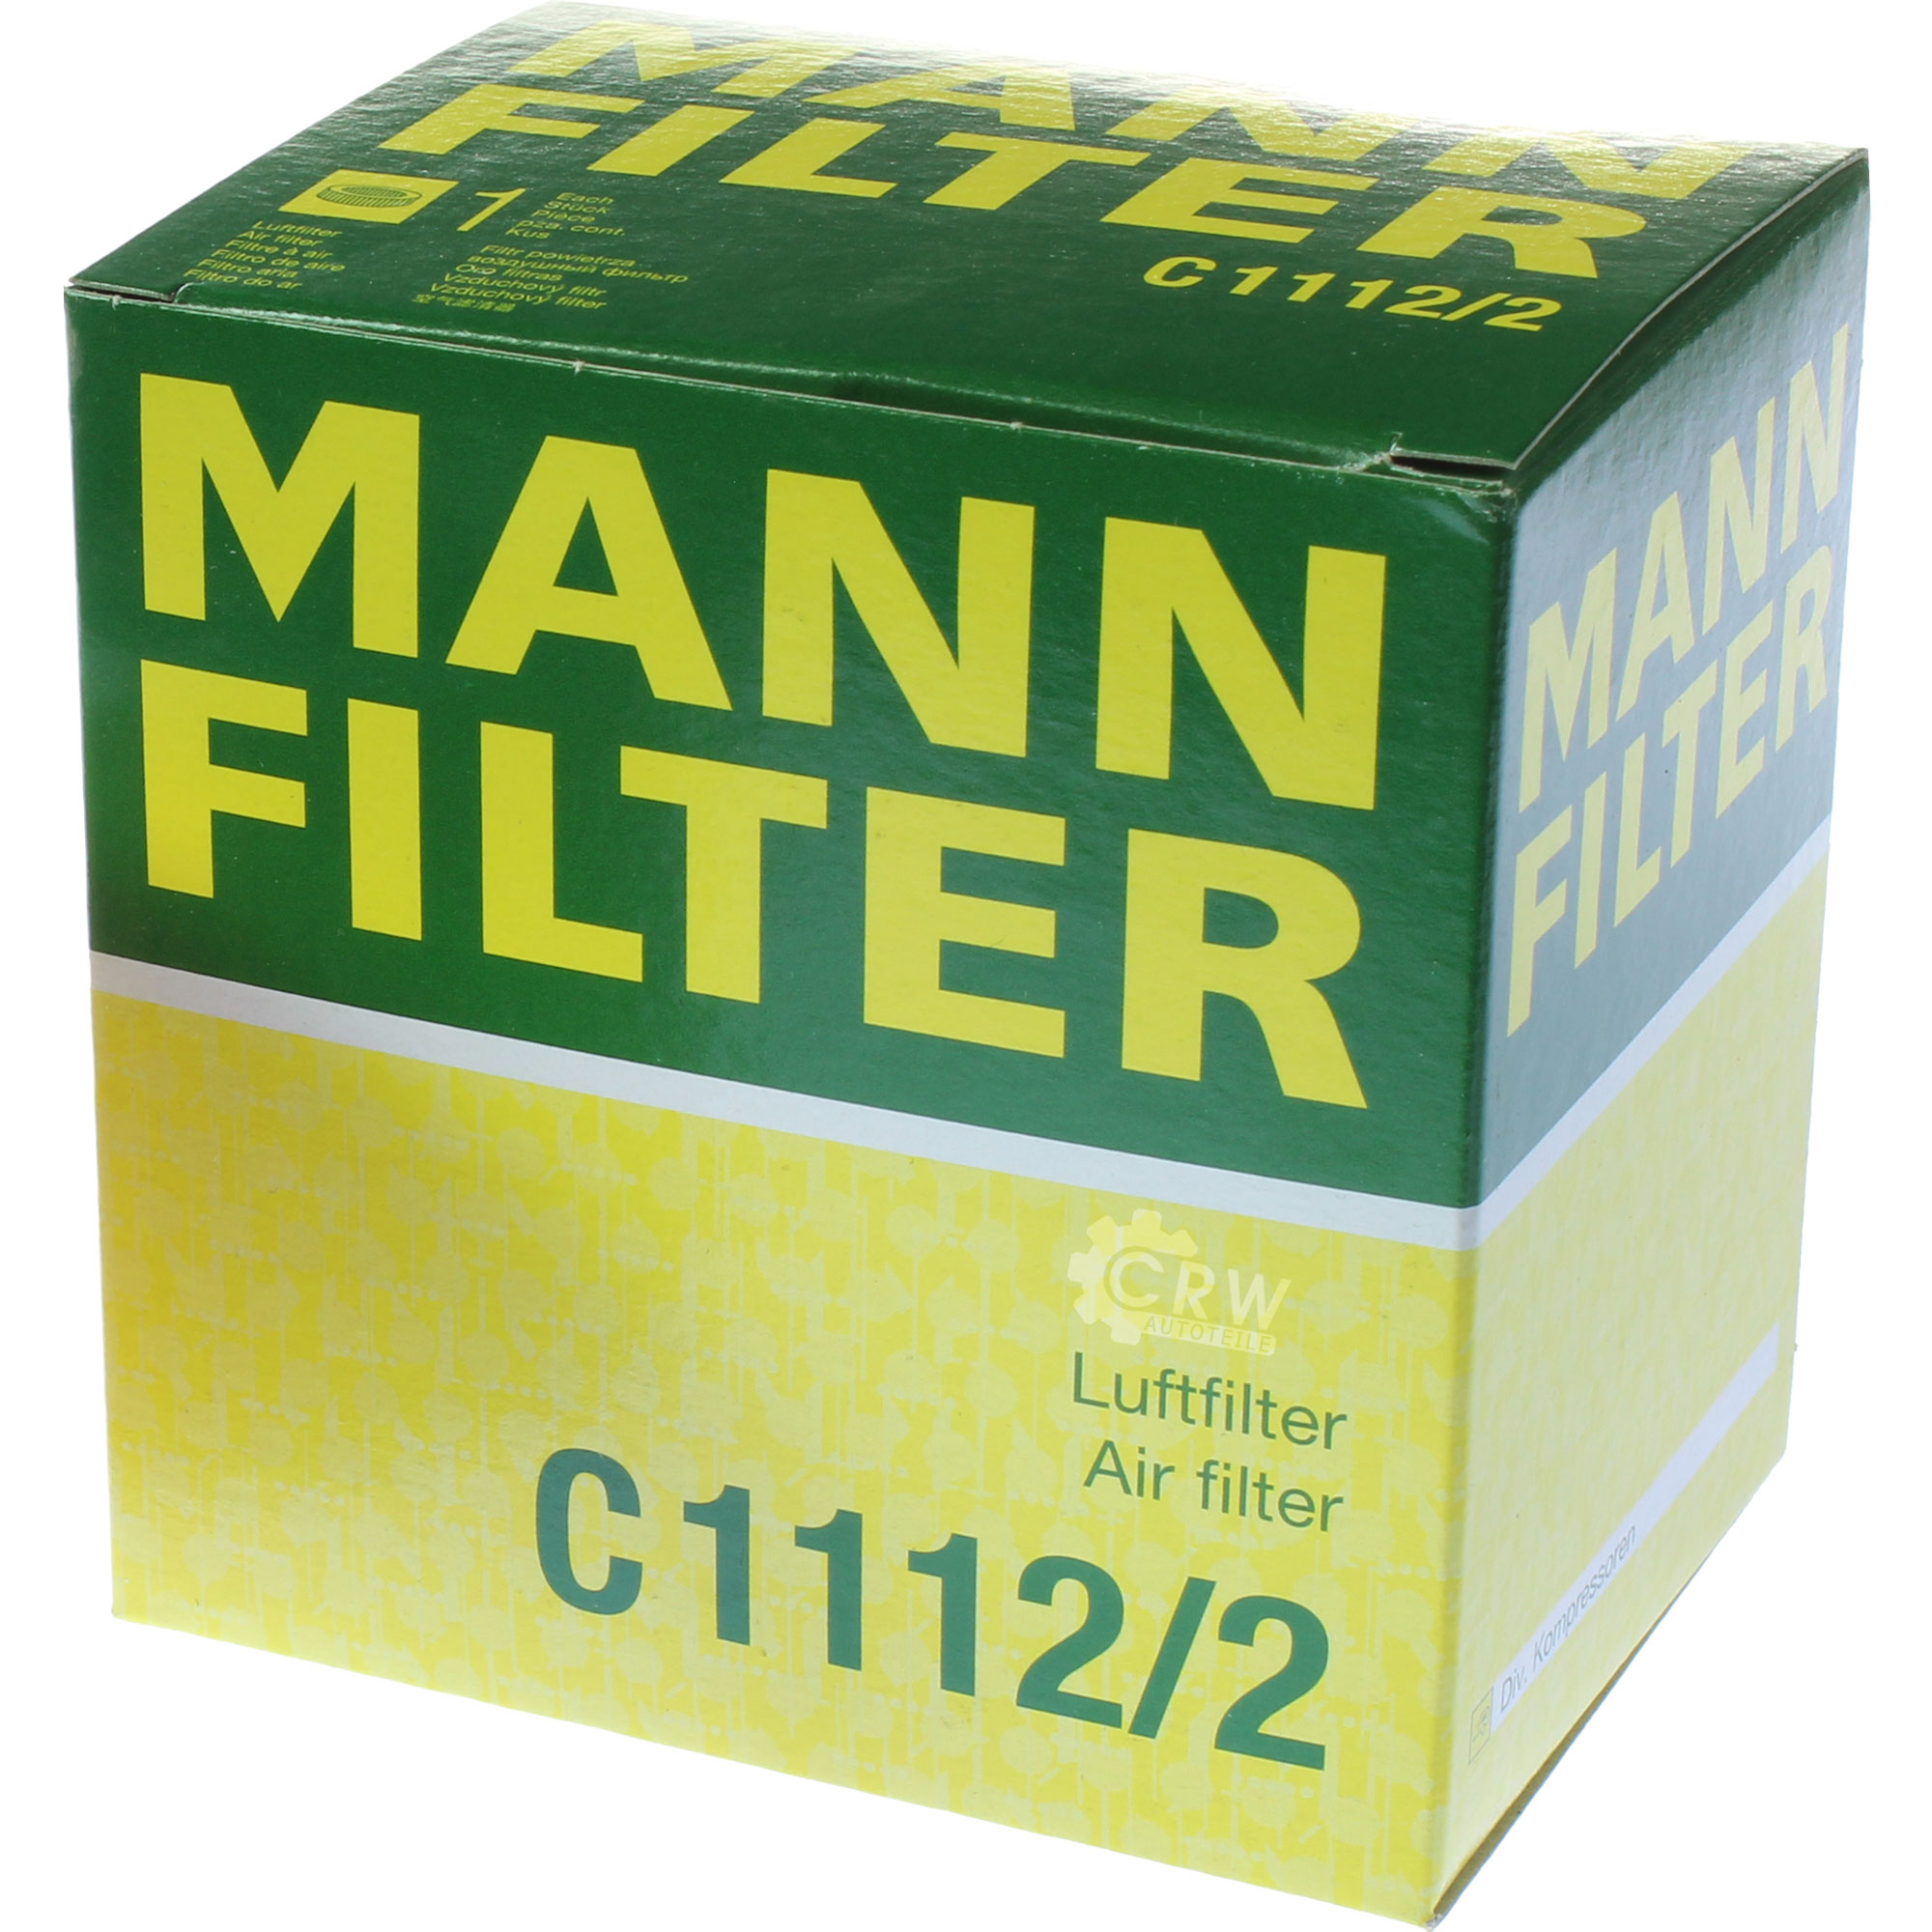 MANN-FILTER Luftfilter C 1112/2